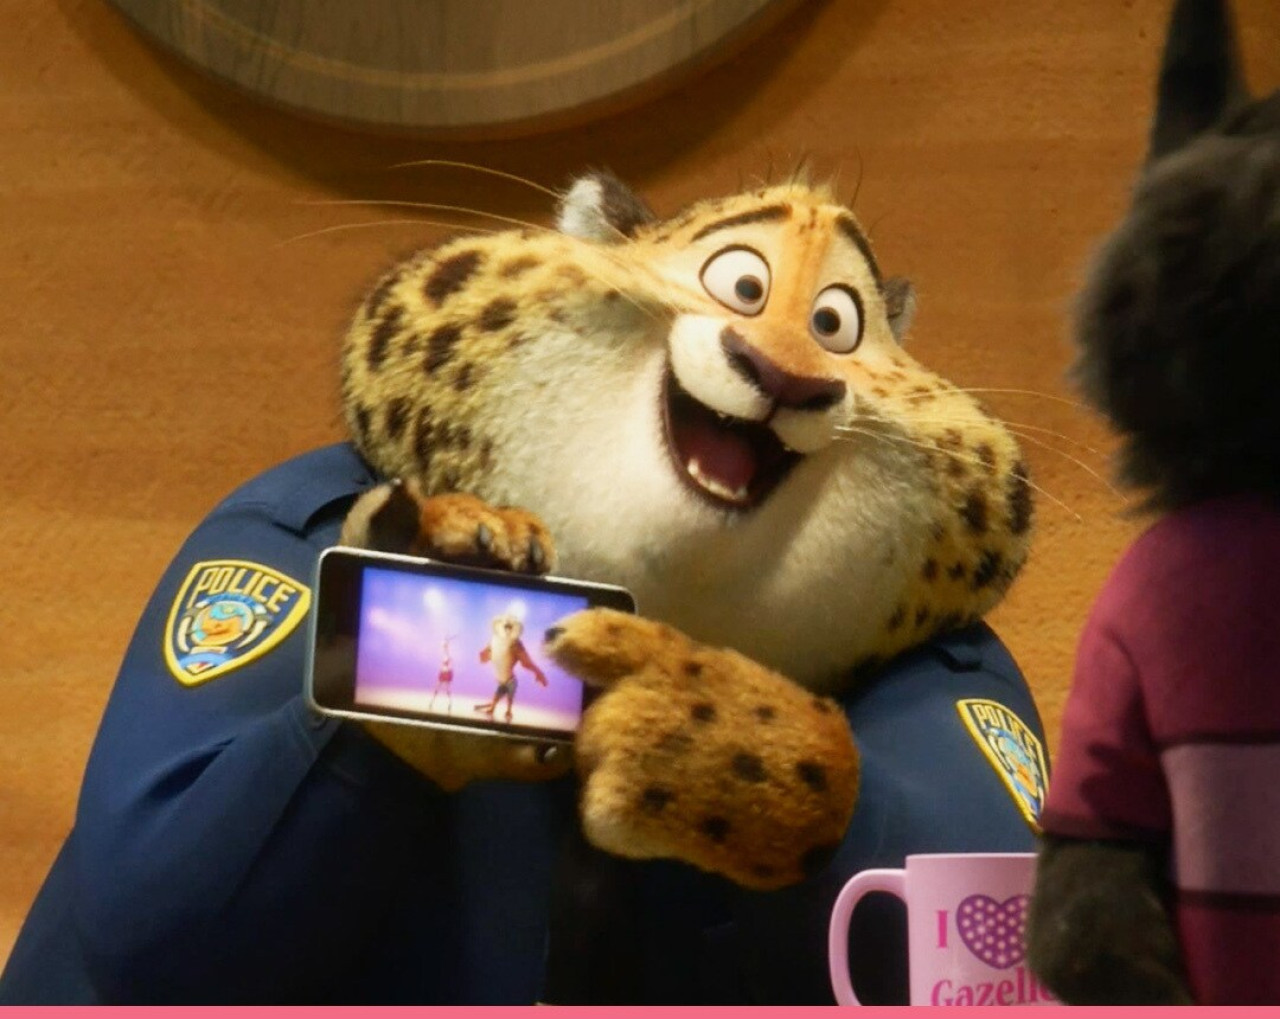 Personaje con el que se comparaba al leopardo. Foto: Disney Latino.